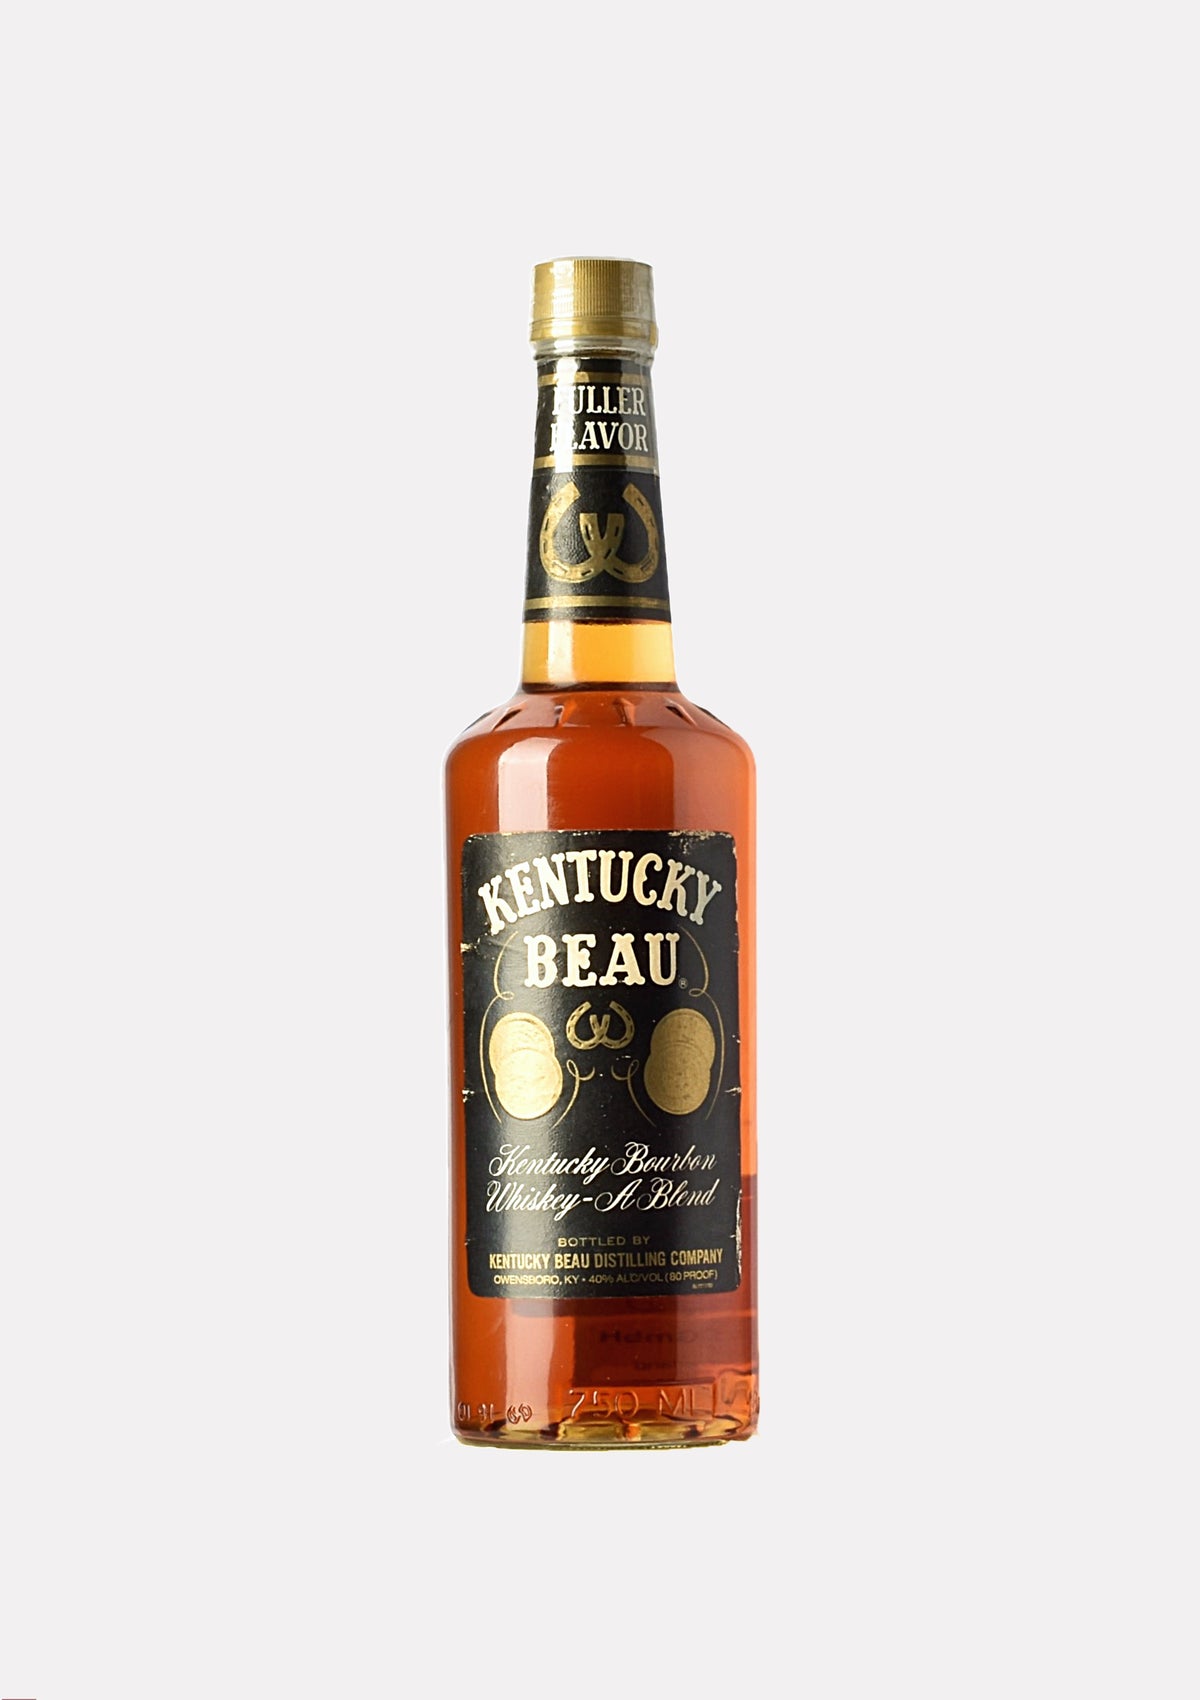 Kentucky Beau Kentucky Bourbon Whiskey- A Blend